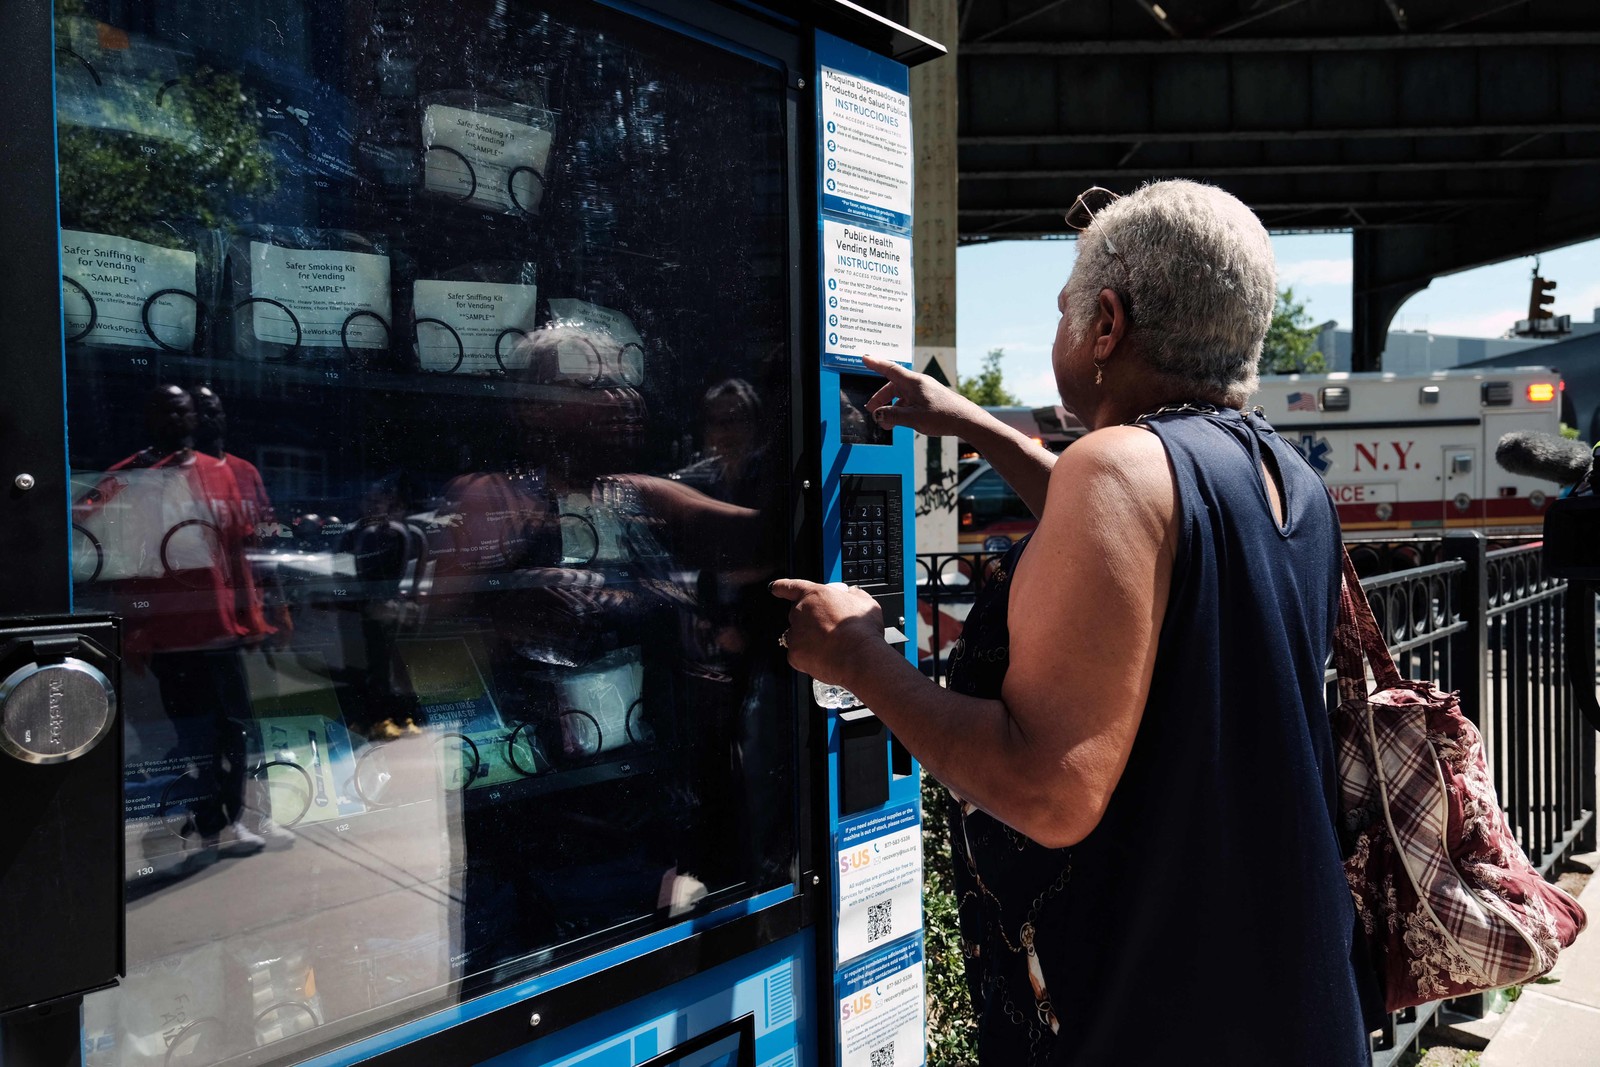 Nova máquina de venda automática no Brooklyn distribuirá tiras de teste de fentanil, naloxona, kits de higiene, absorventes, vitamina C e testes de COVID-19 gratuitos — Foto: Spencer Platt / Getty Images via AFP